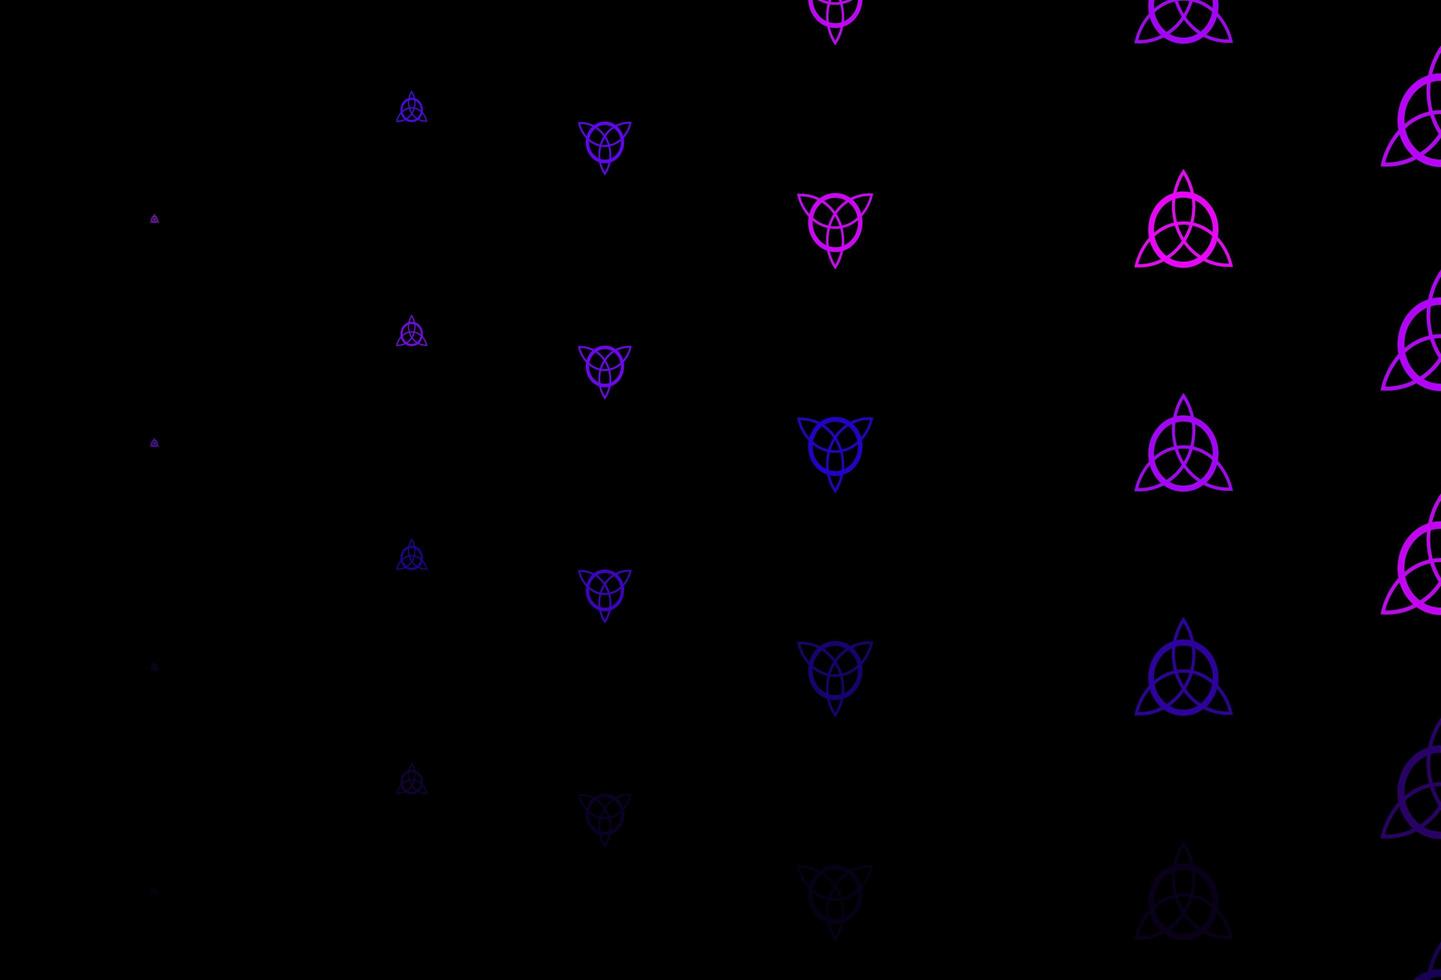 fond de vecteur violet foncé avec des symboles occultes.